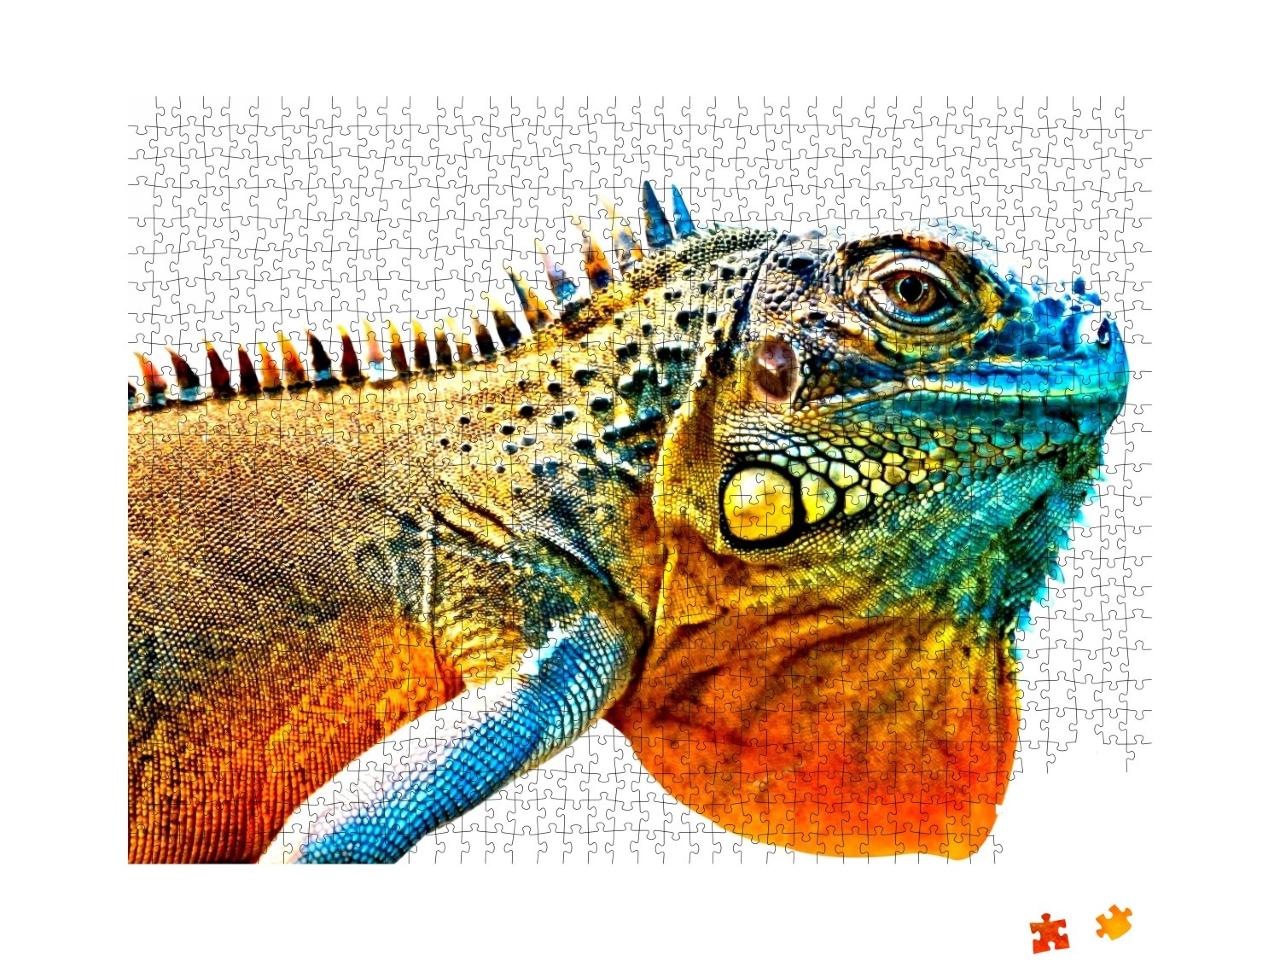 Puzzle de 1000 pièces « Photo de détail d'un iguane multicolore »